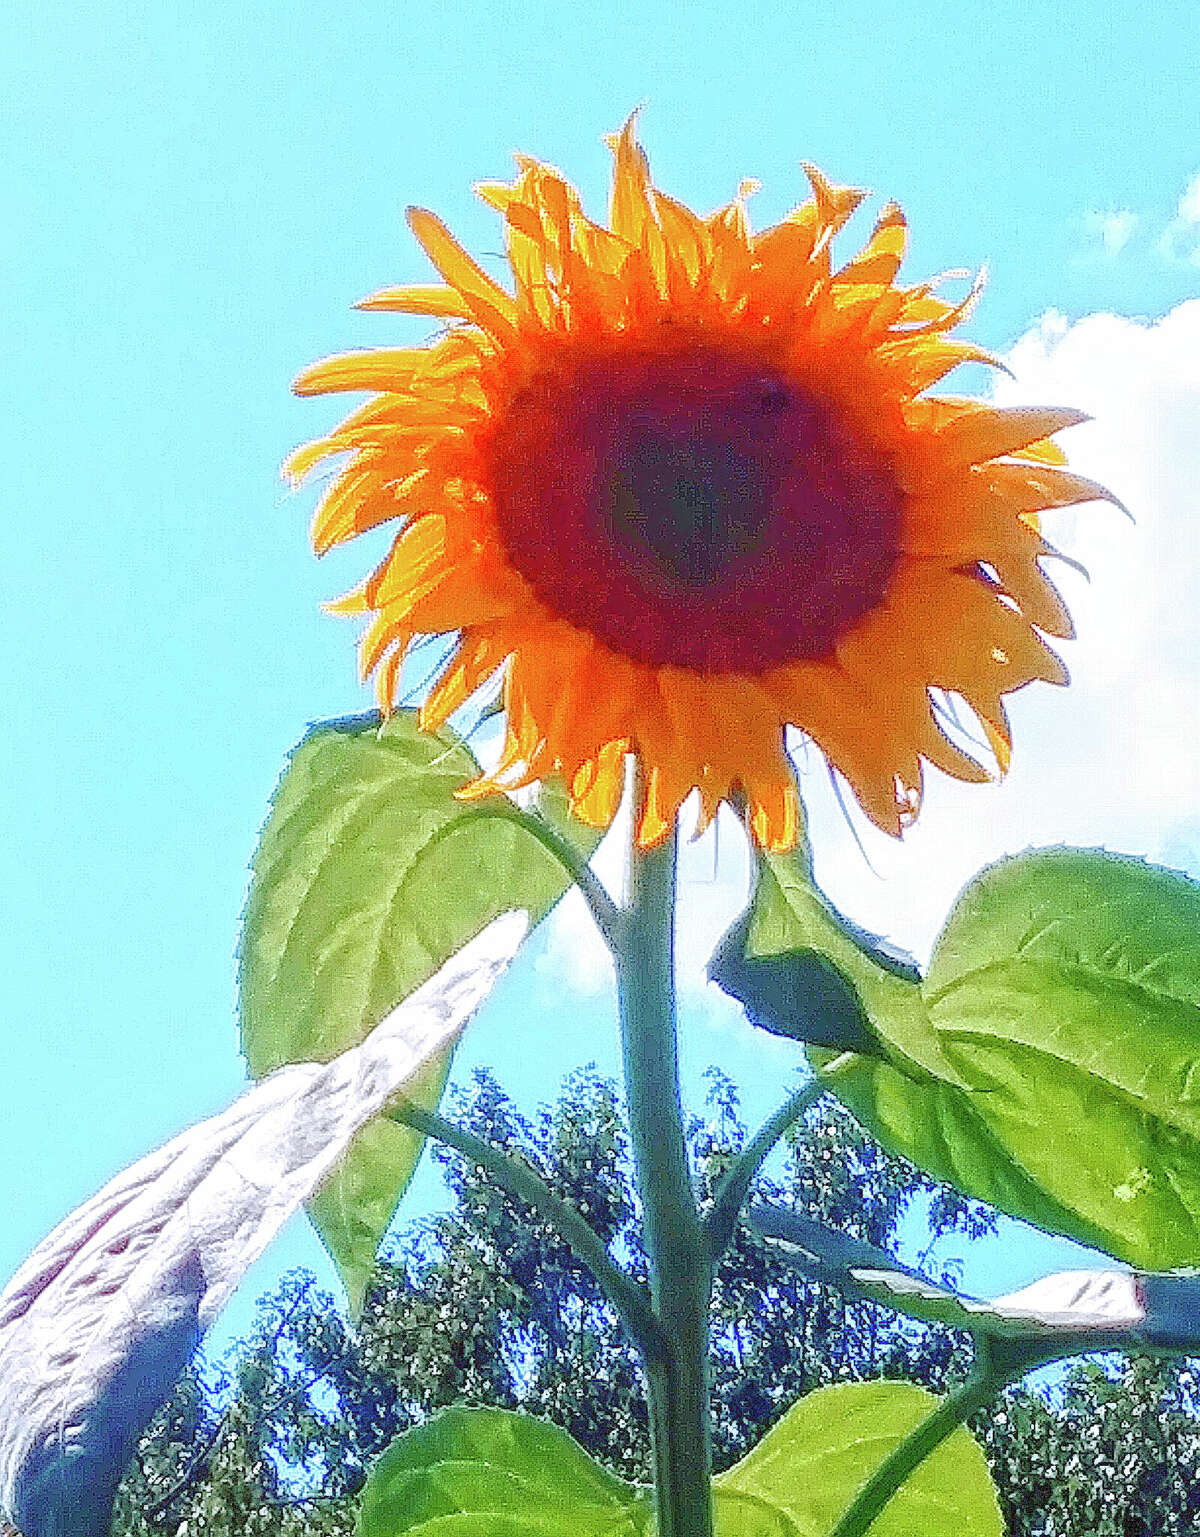 A sunflower reaches toward the blue sky on a sunny summer day.